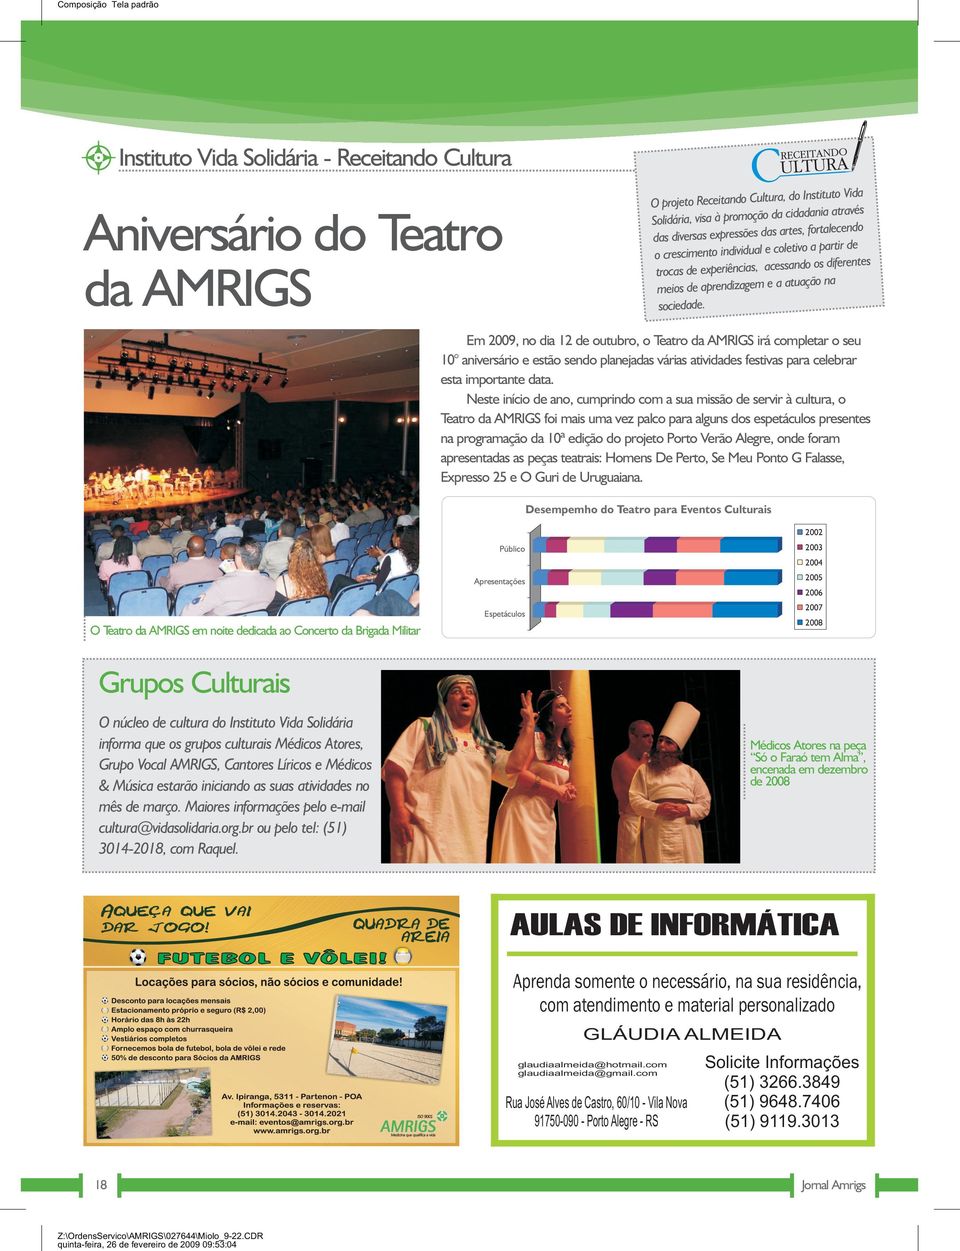 Aniversário do Teatro da AMRIGS Em 2009, no dia 12 de outubro, o Teatro da AMRIGS irá completar o seu 10 aniversário e estão sendo planejadas várias atividades festivas para celebrar esta importante